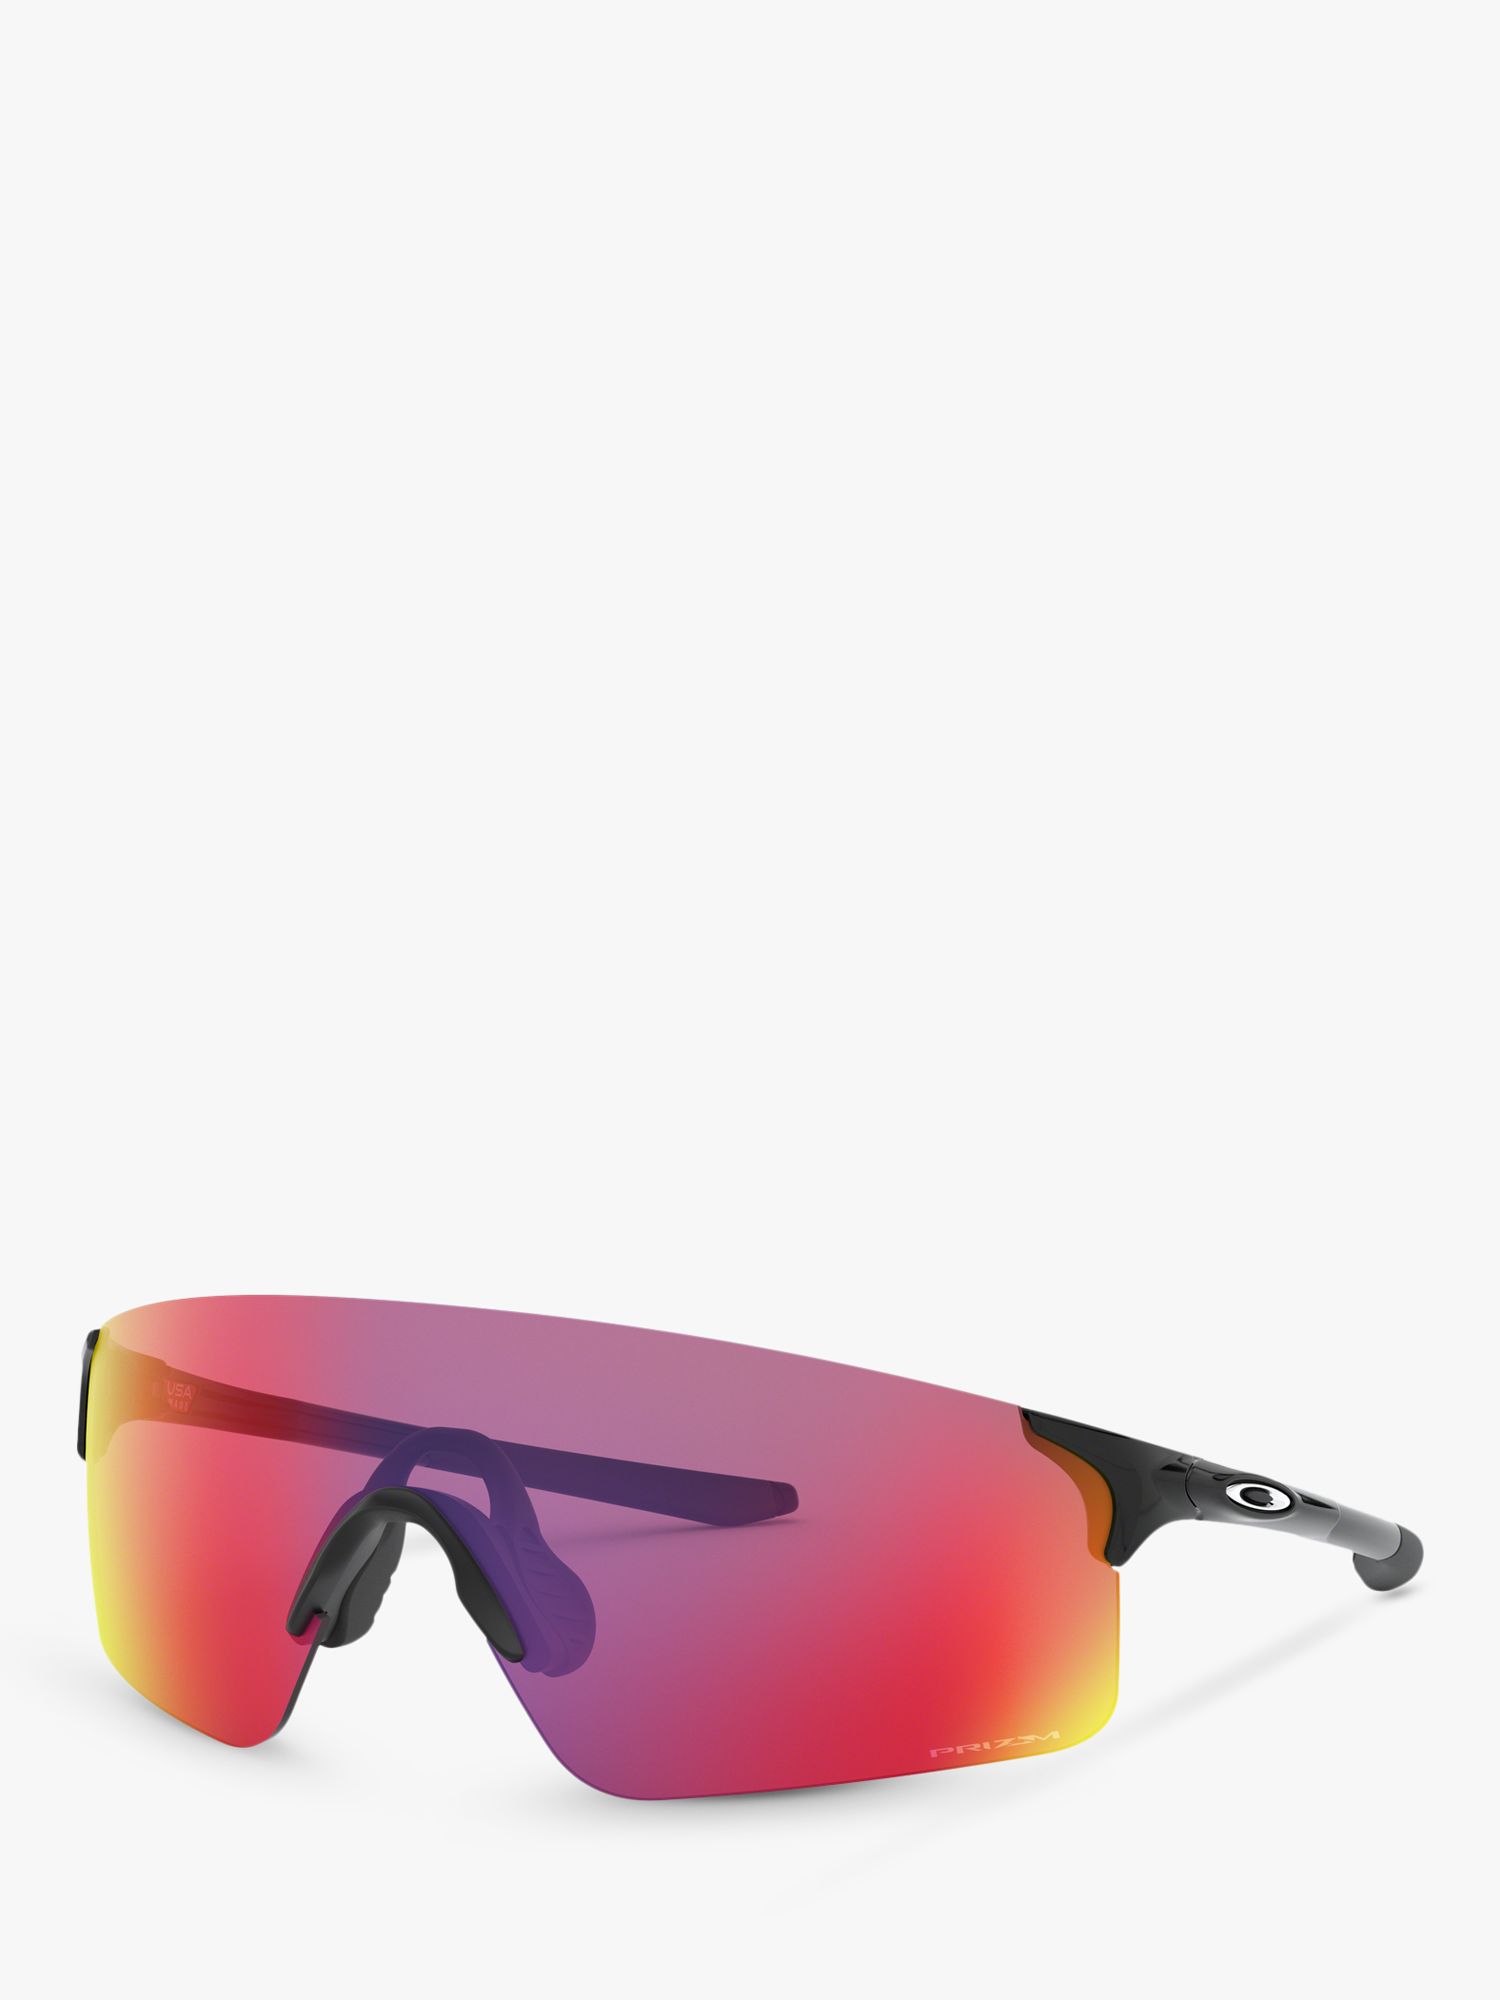 цена Мужские прямоугольные солнцезащитные очки Oakley OO9454 EVZero Prizm, черные полированные/зеркальные, разноцветные